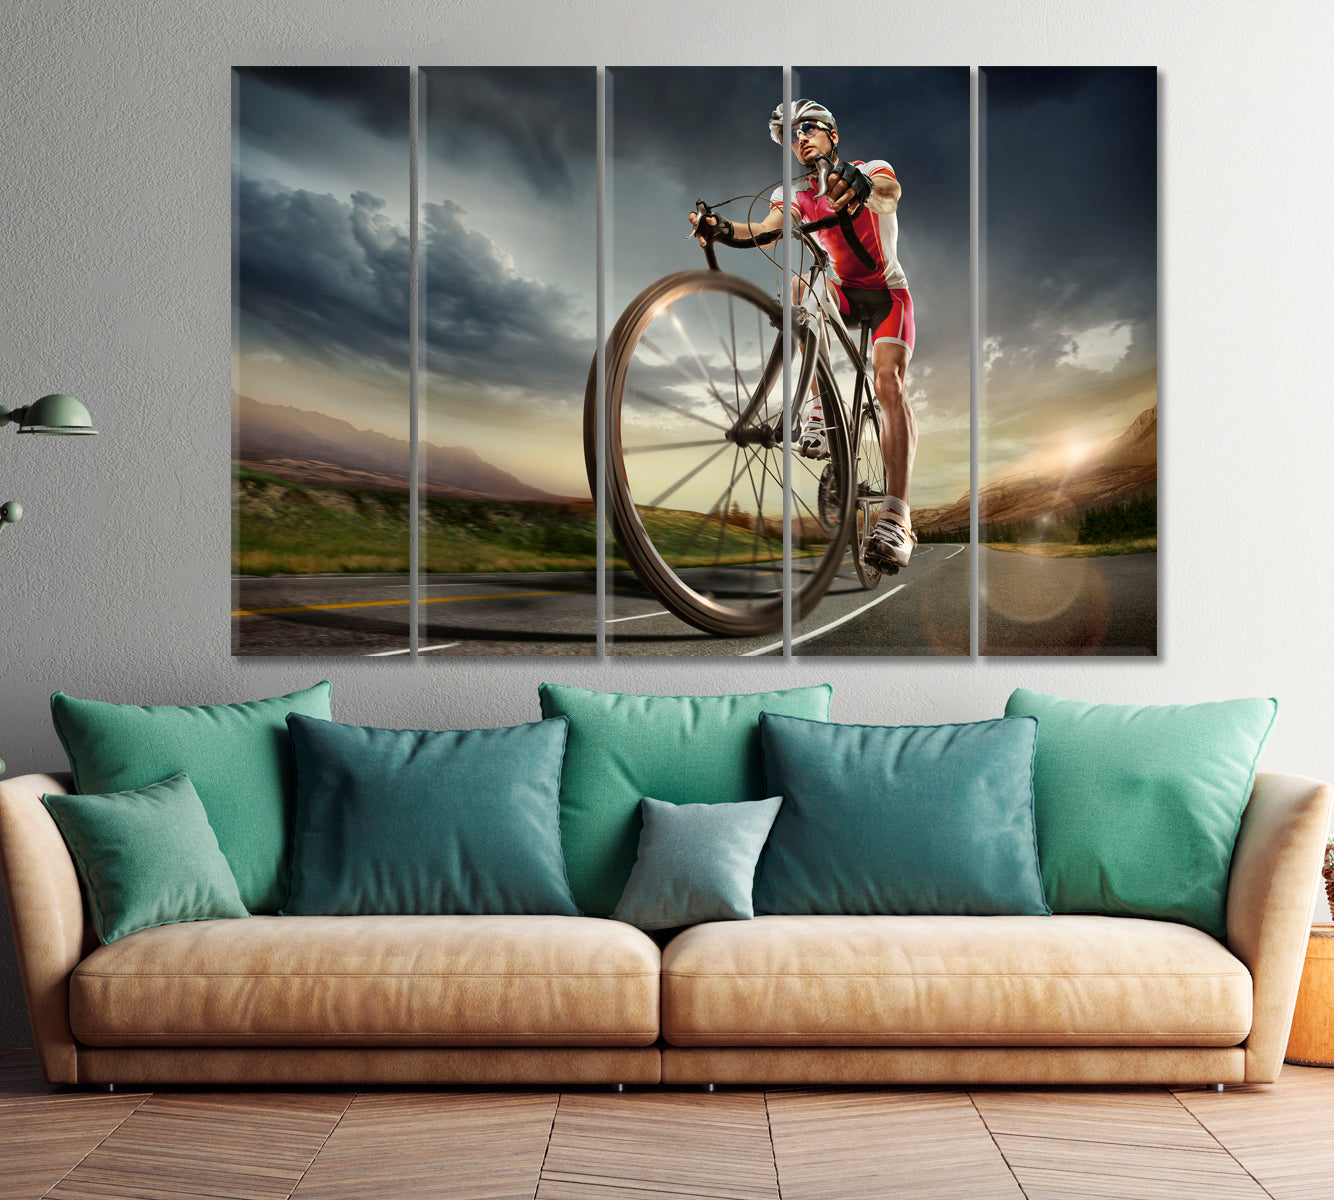 Road Cyclist Sport Active Lifestyle Concept Canvas Print Motivation Sport Poster Print Decor Artesty 5 panels 36" x 24" 